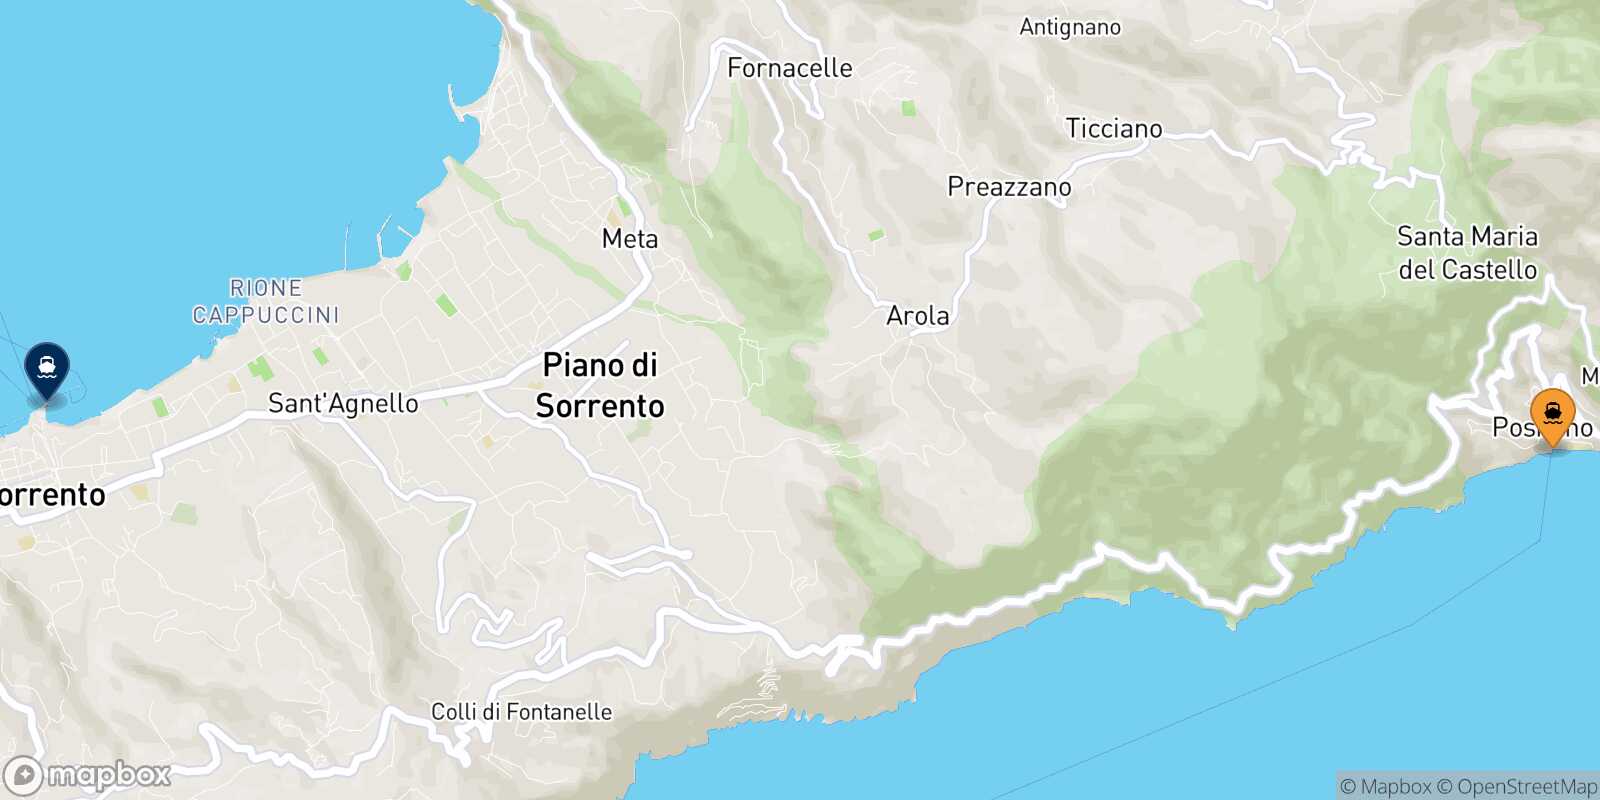 Mapa de la ruta Positano Castellammare